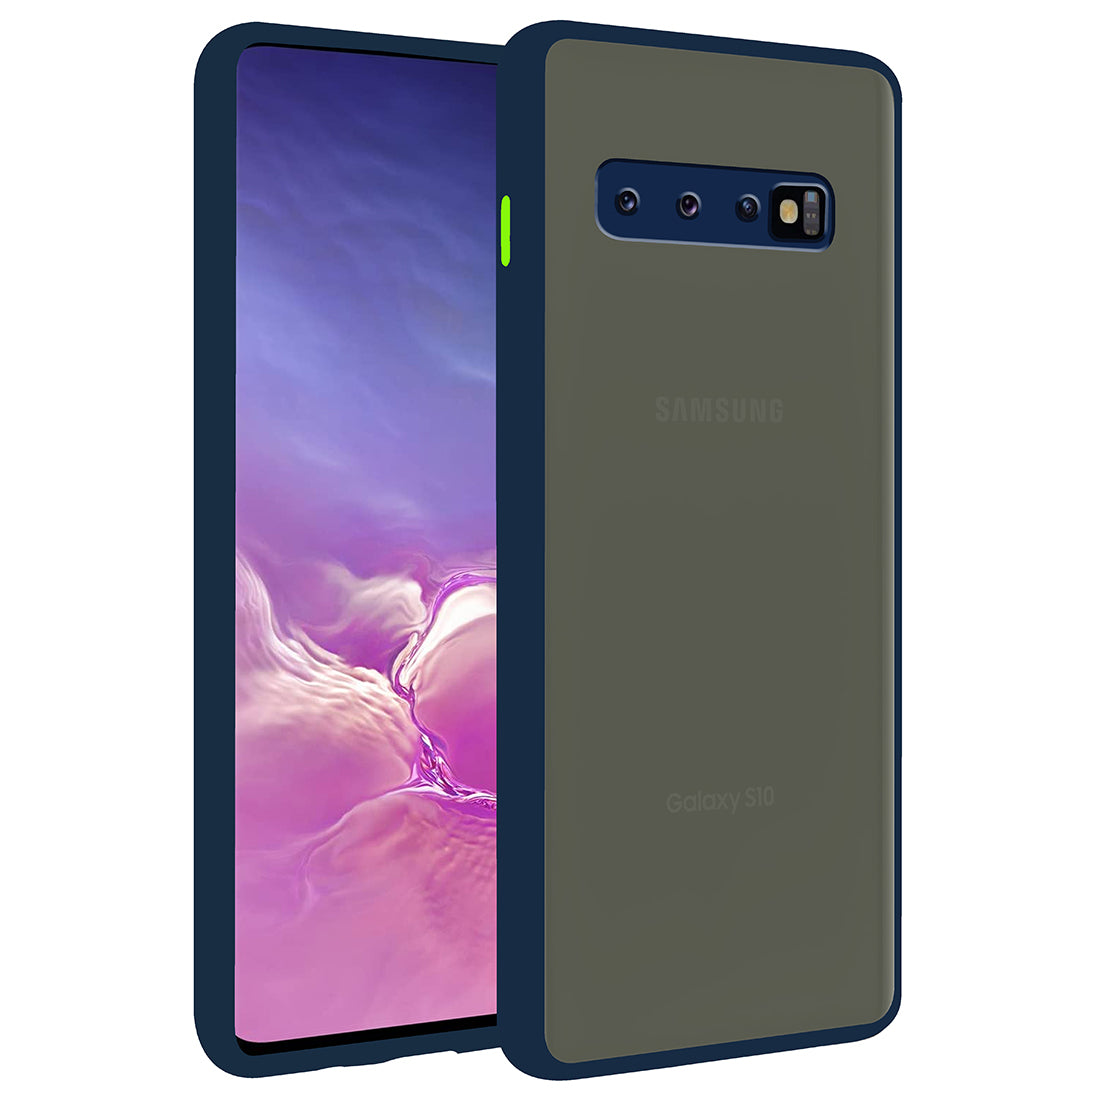 Samsung Galaxy S10 4G